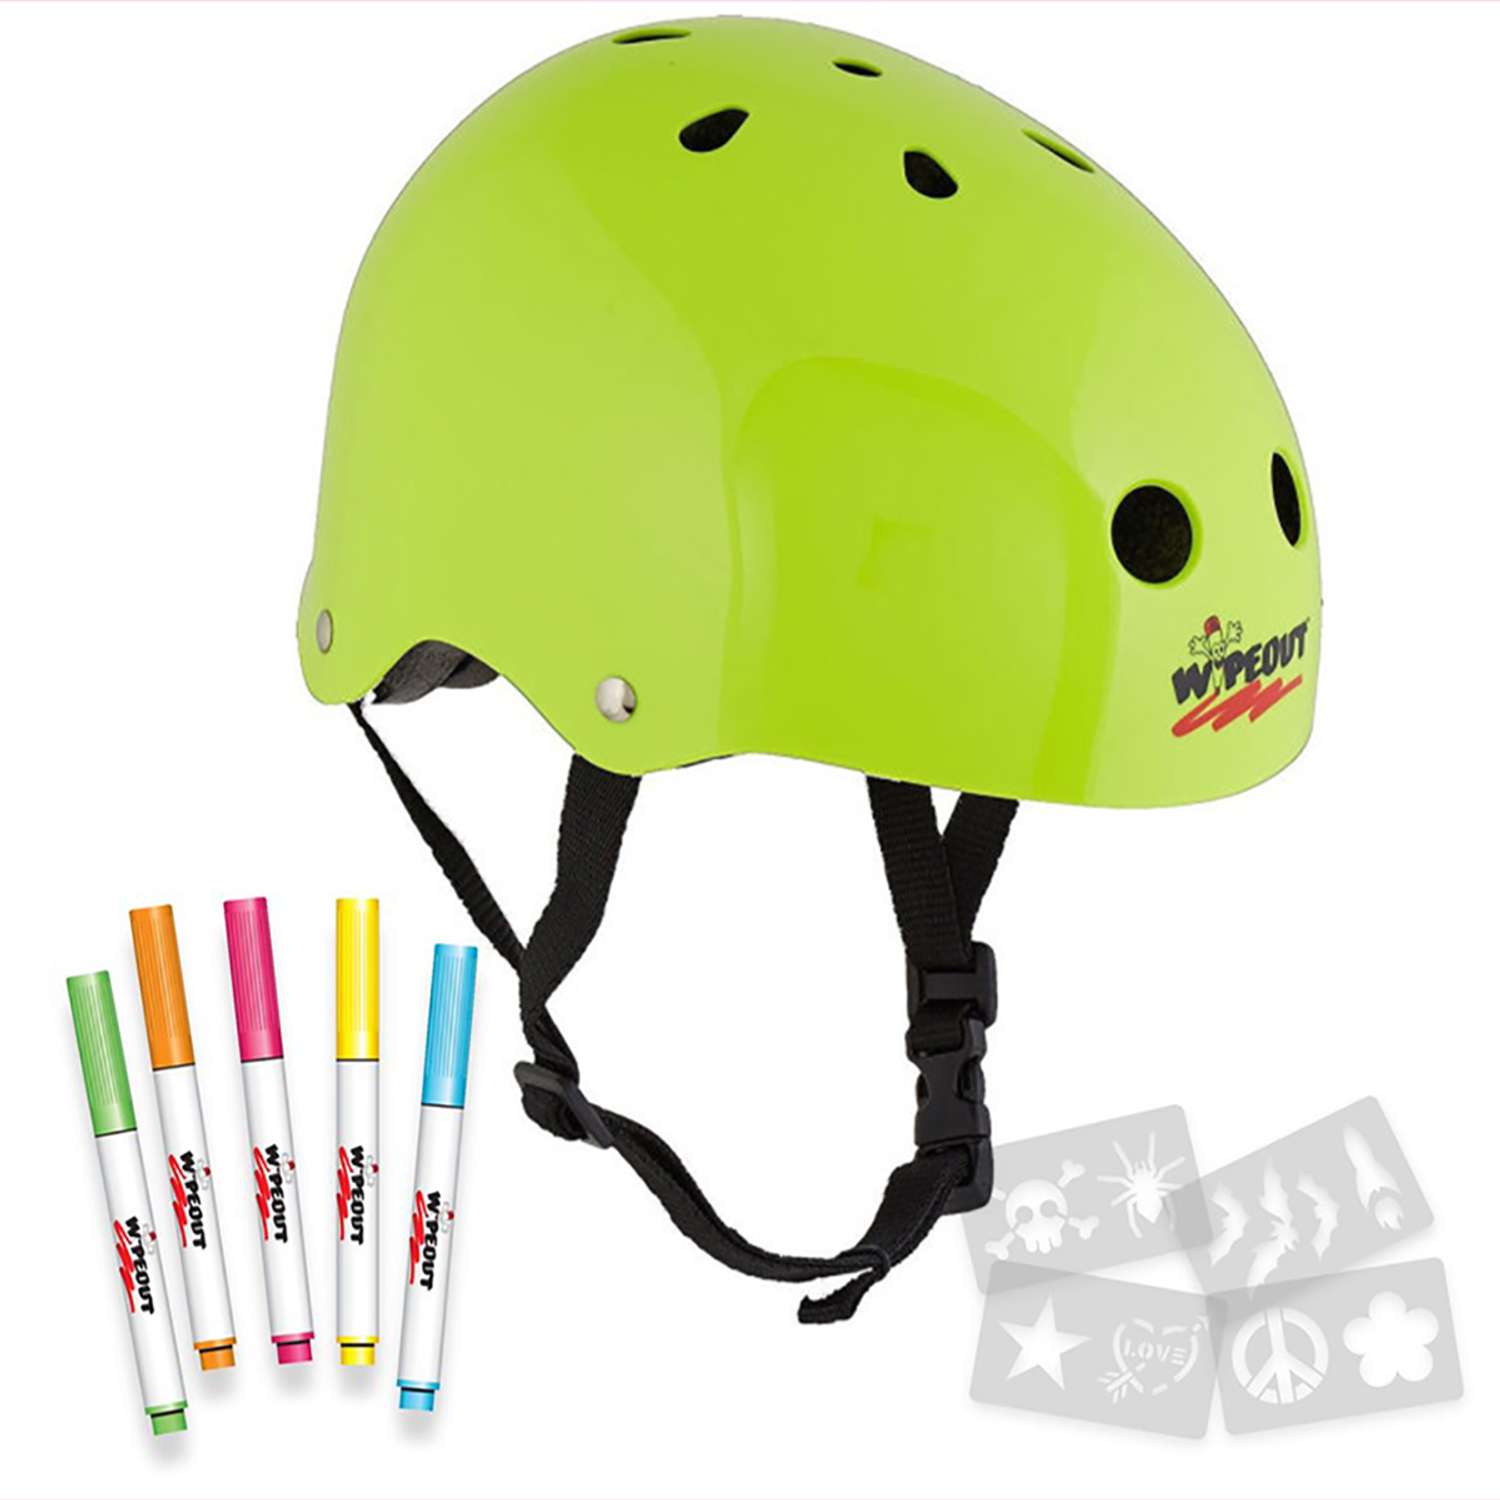 Шлем защитный спортивный WIPEOUT Neon Zest с фломастерами и трафаретами / размер M 5+ / обхват головы 49-52 см. - фото 2